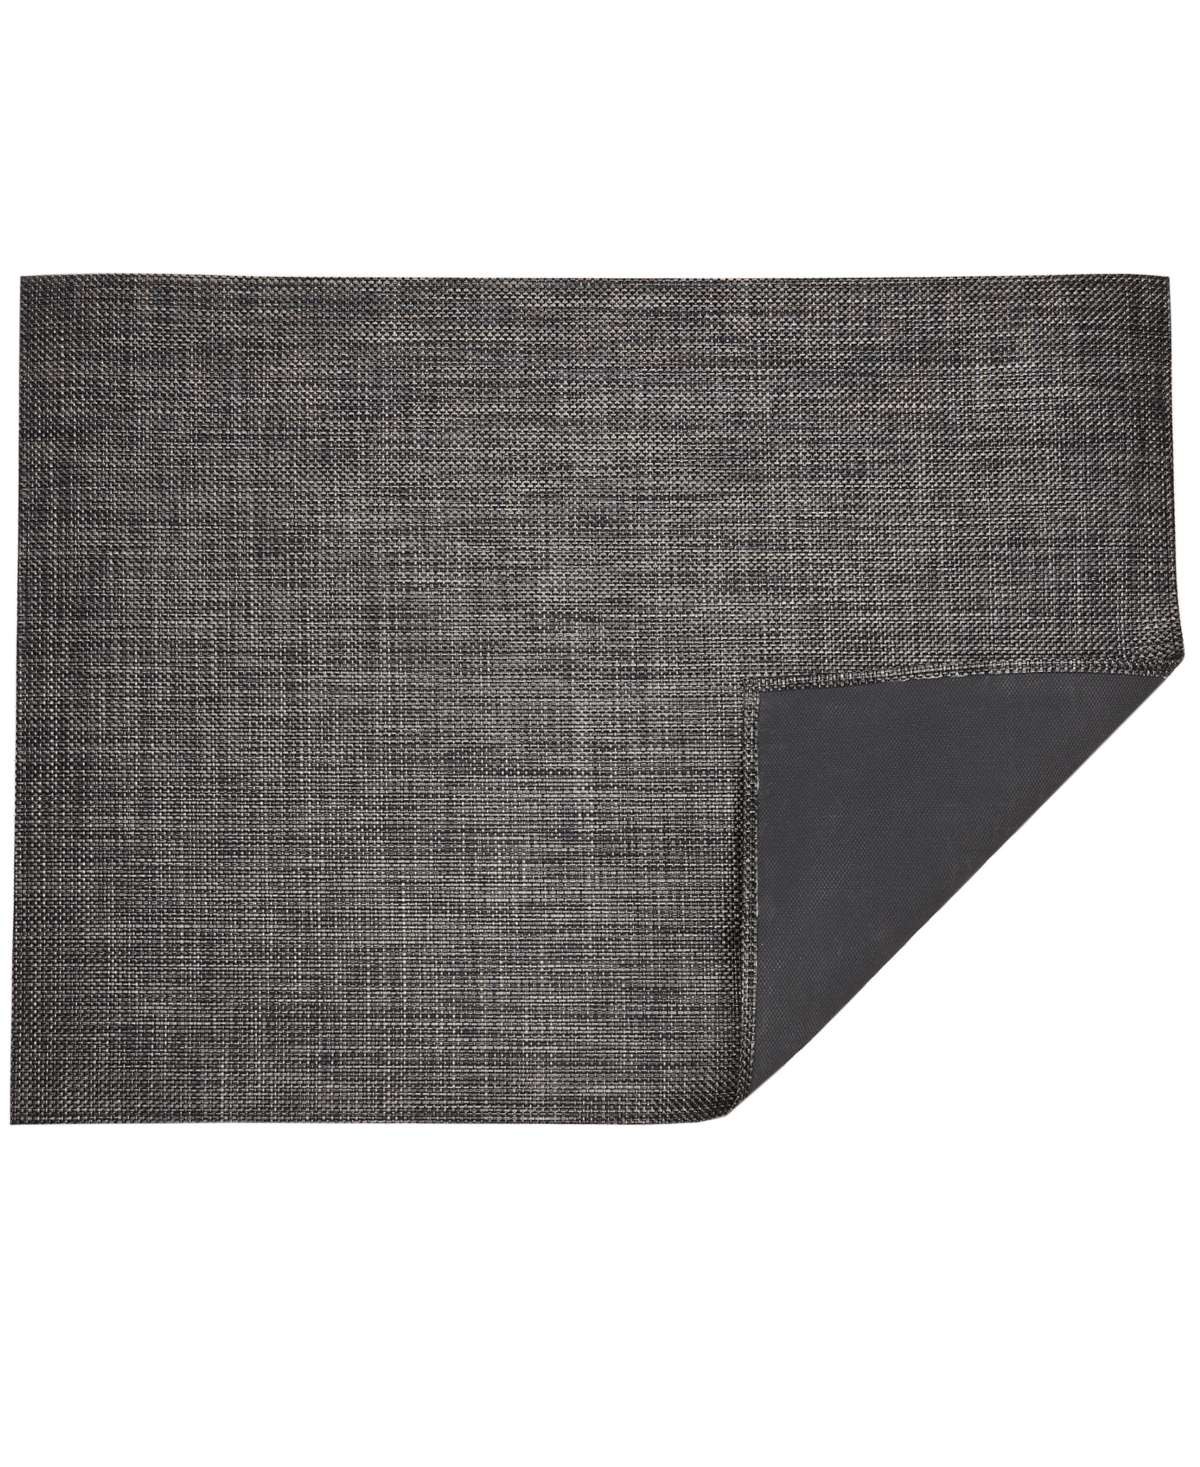 Basketweave Floormat, 30" x 106" - Carbon